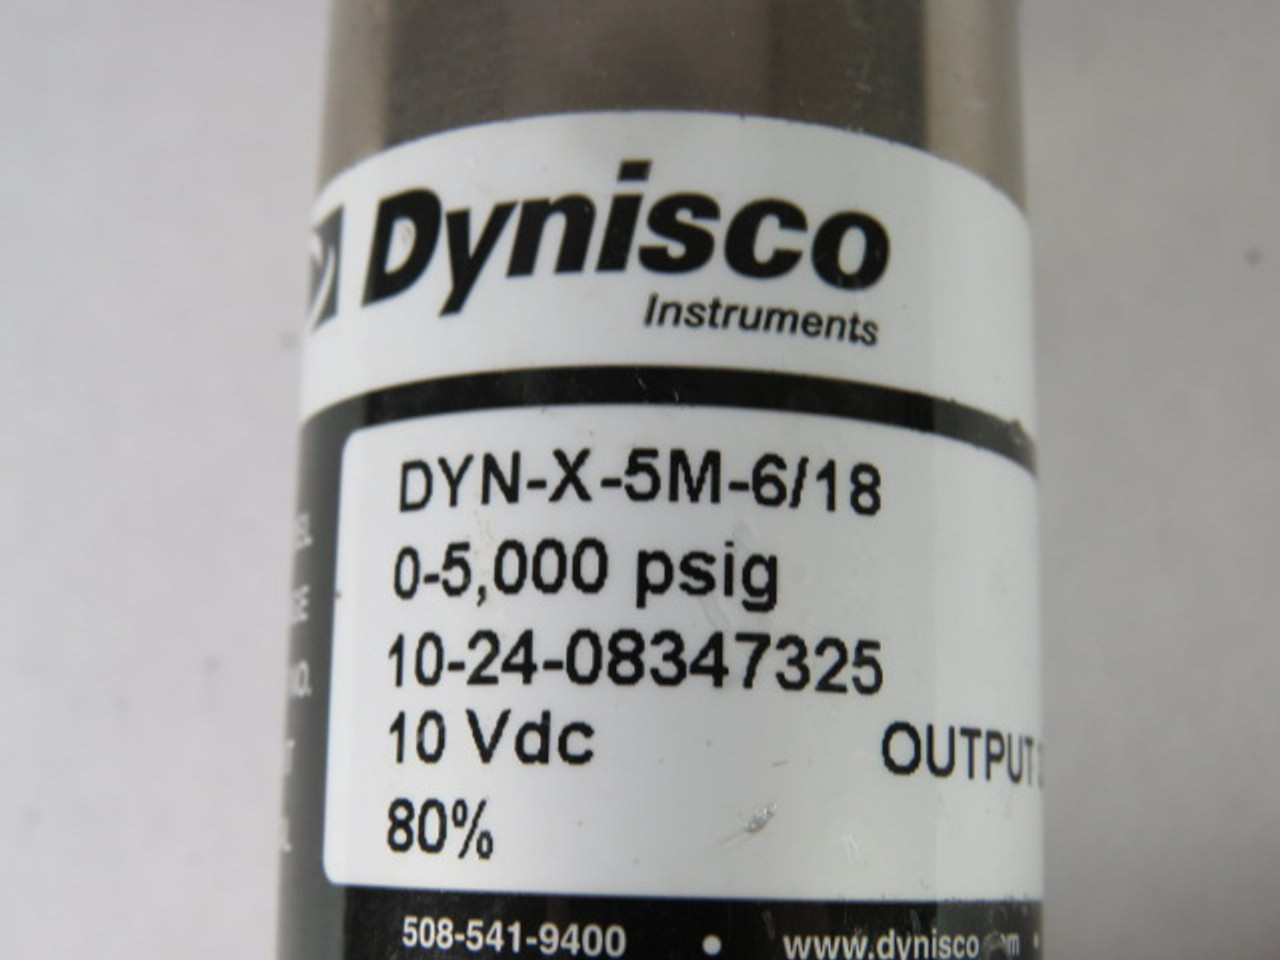 Dynisco DYN-X-5M-6/18 Pressure Sensor 10VDC 33.3MV 0-5000PSIG USED